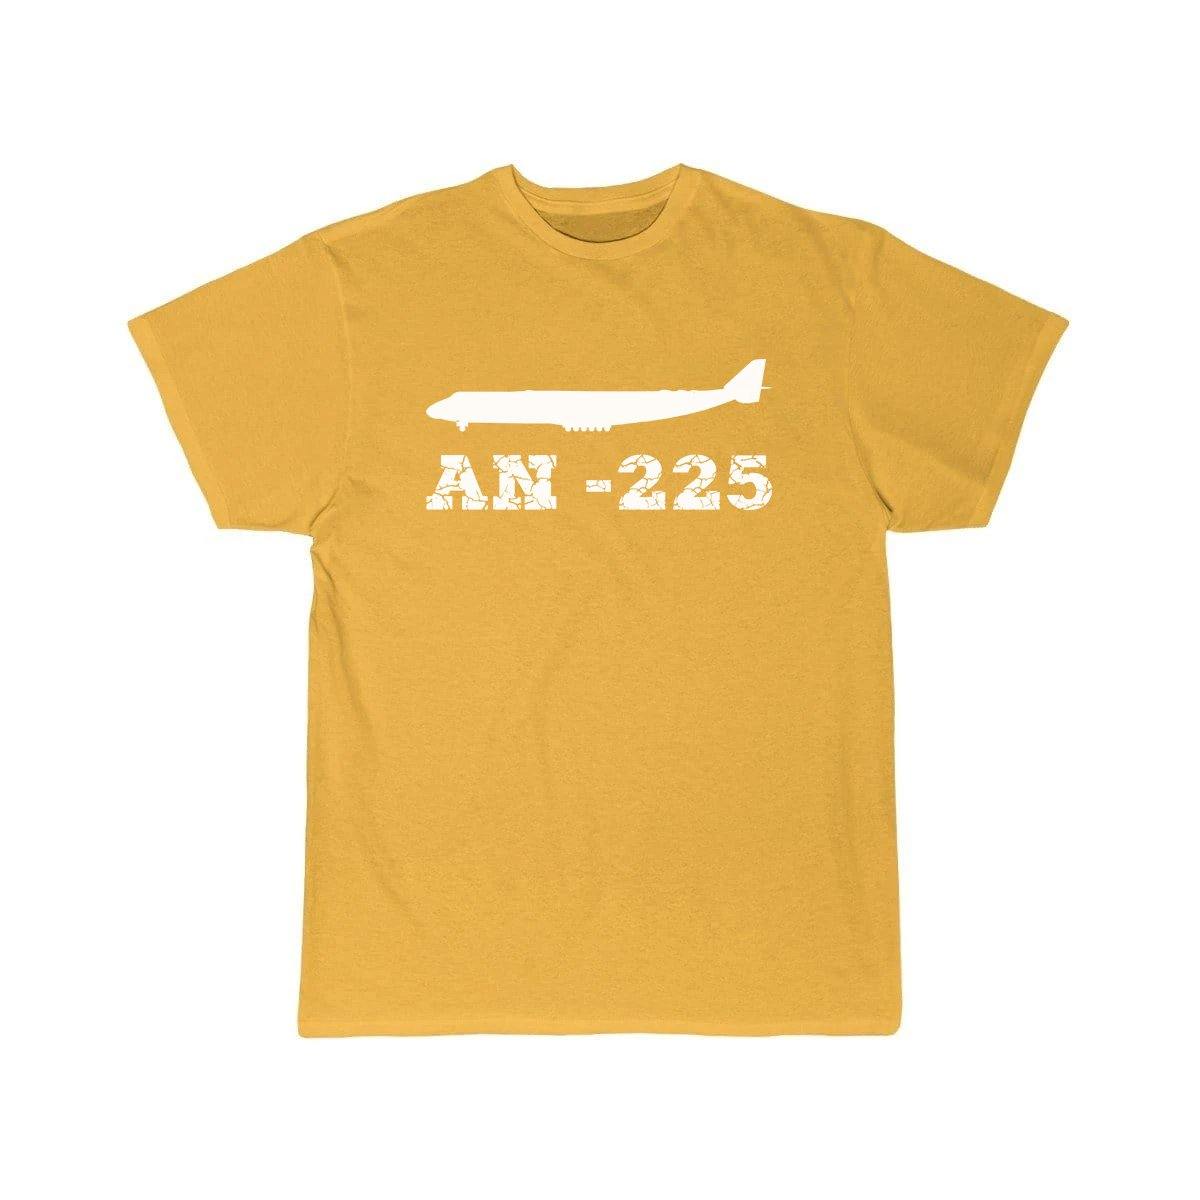 AN225 DESIGNED T SHIRT THE AV8R